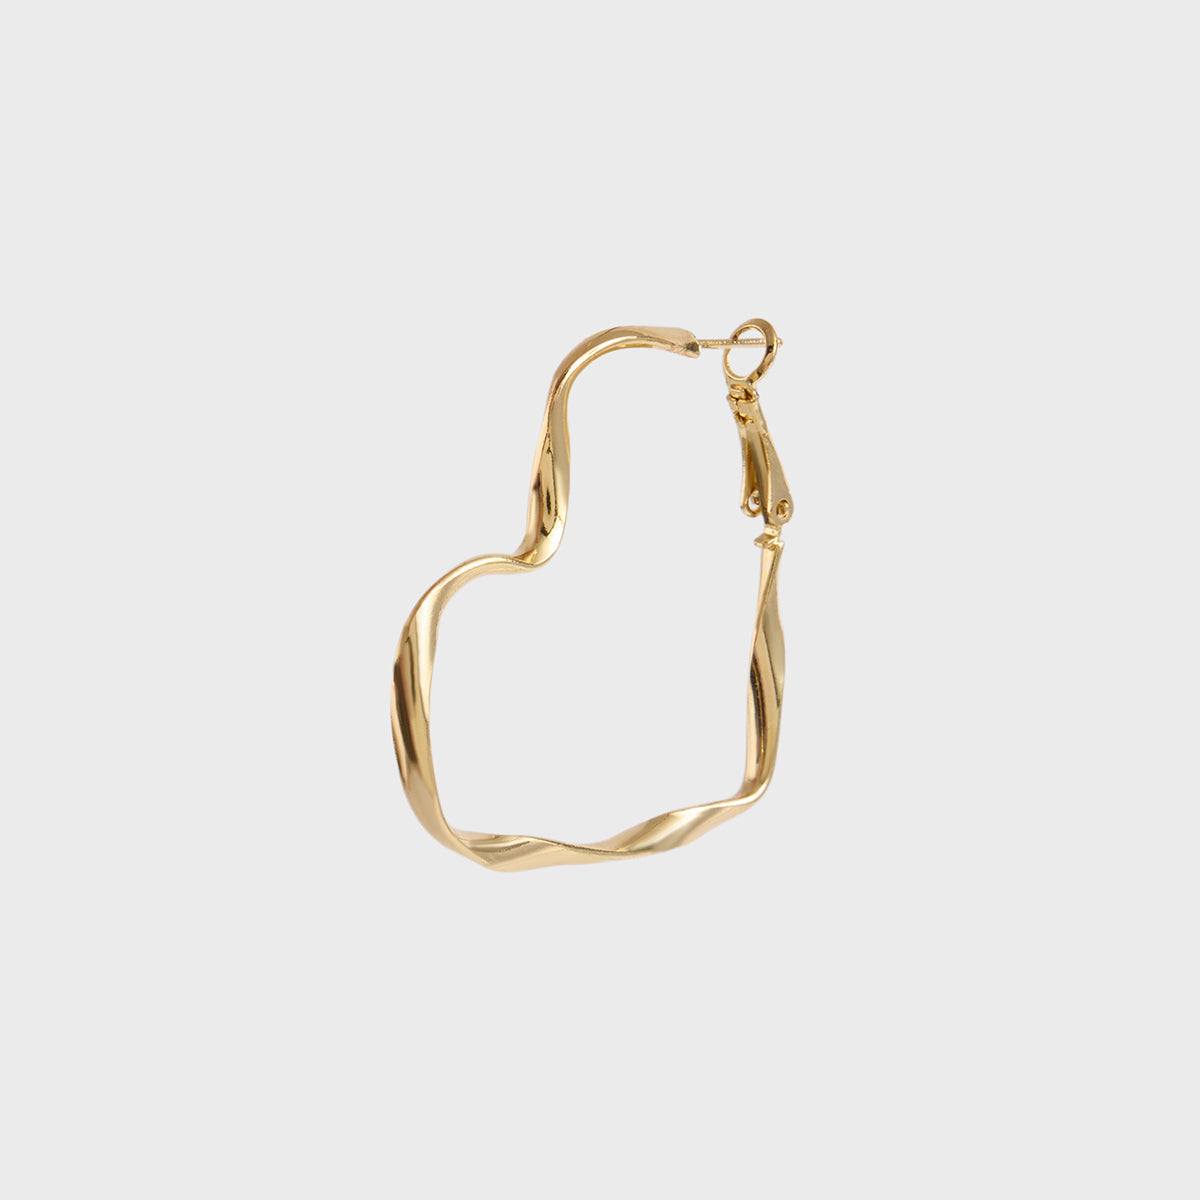 Tilted Heart Hoop Earrings in 14K Gold | Zales